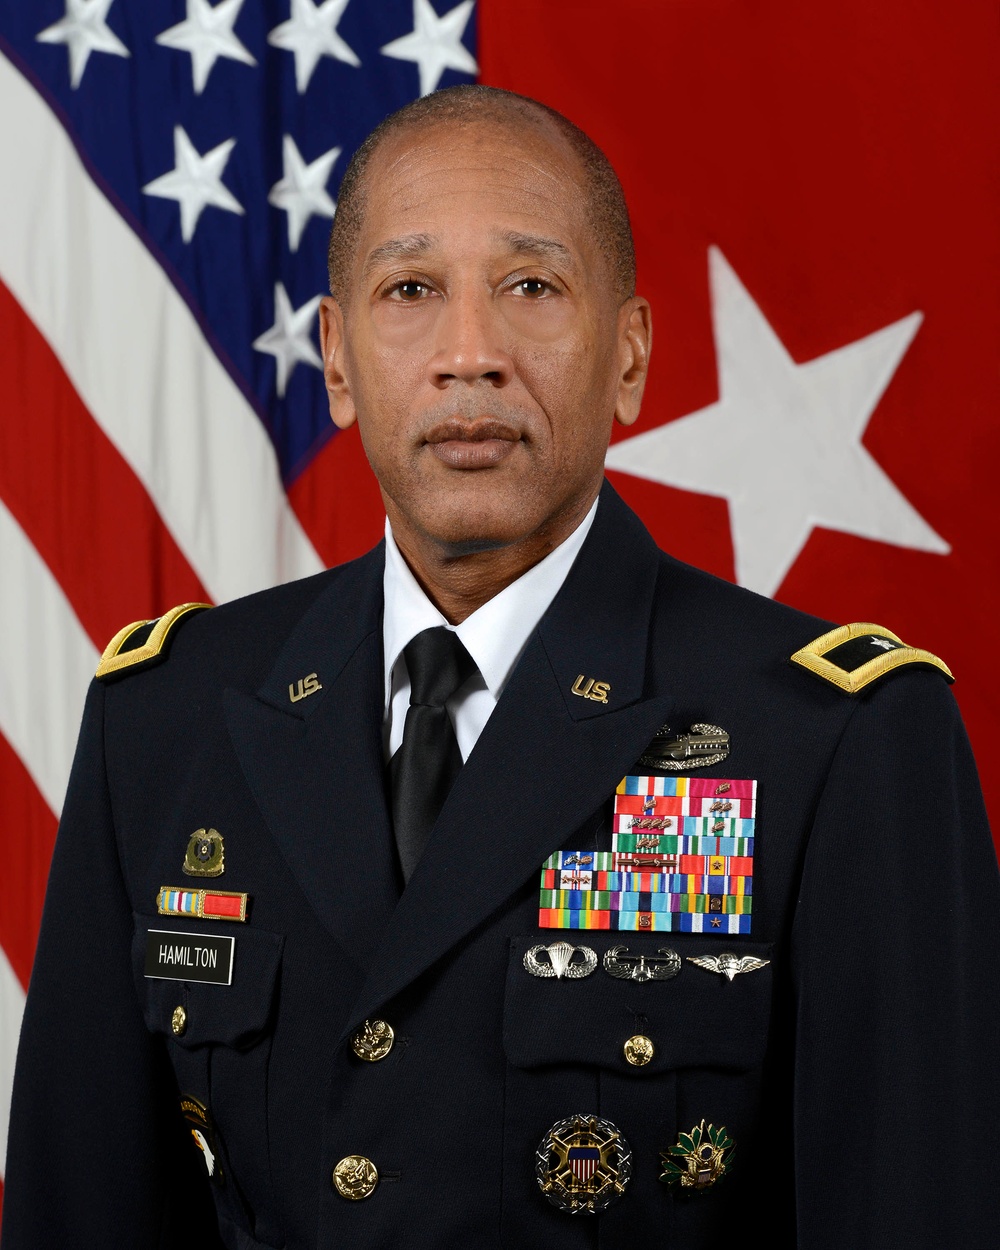 U.S. Army Brig. Gen. Charles R. Hamilton